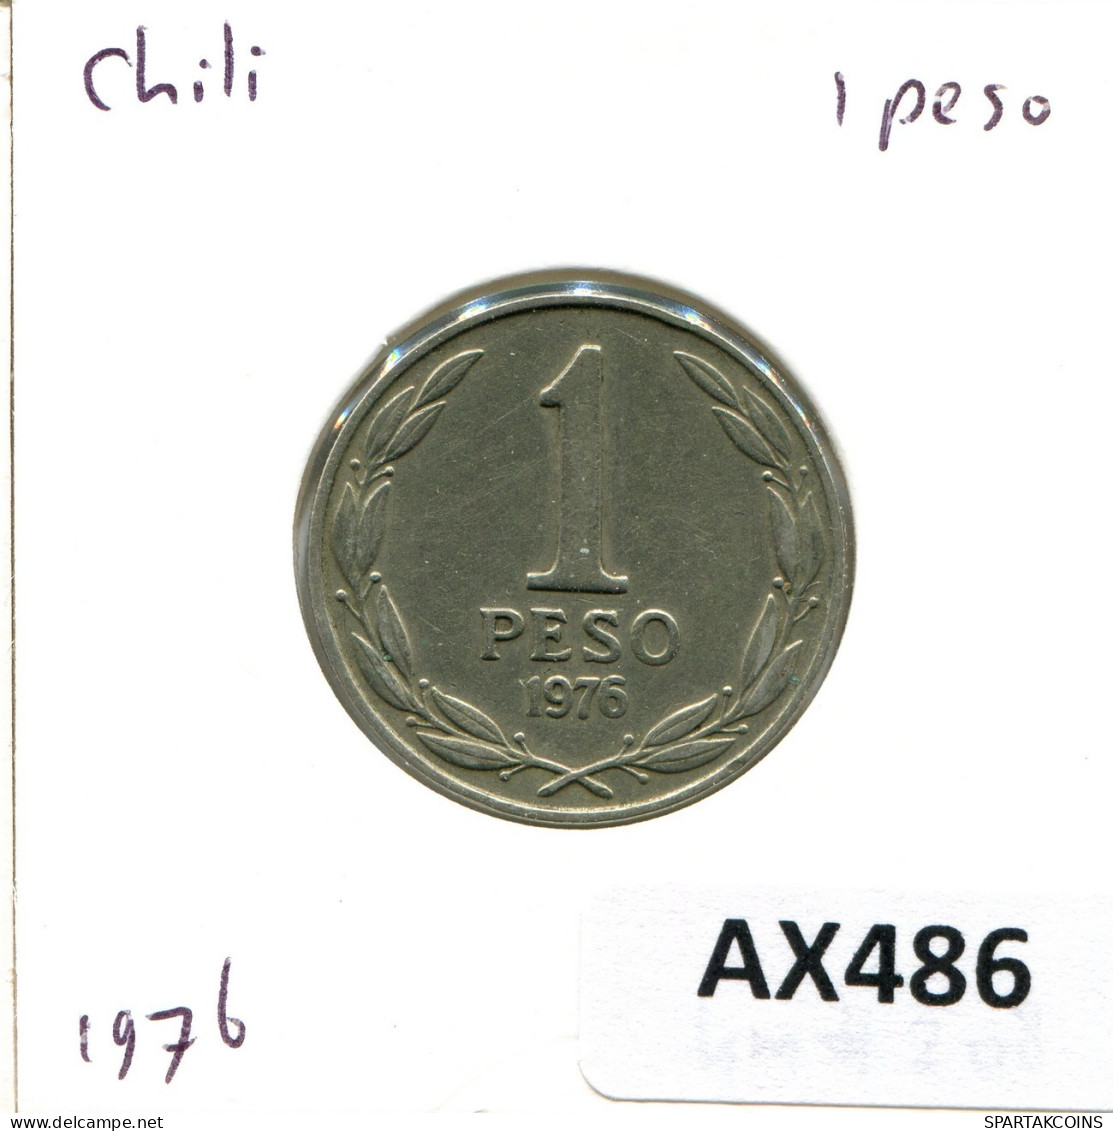 1 PESO 1976 CHILE Coin #AX486.U.A